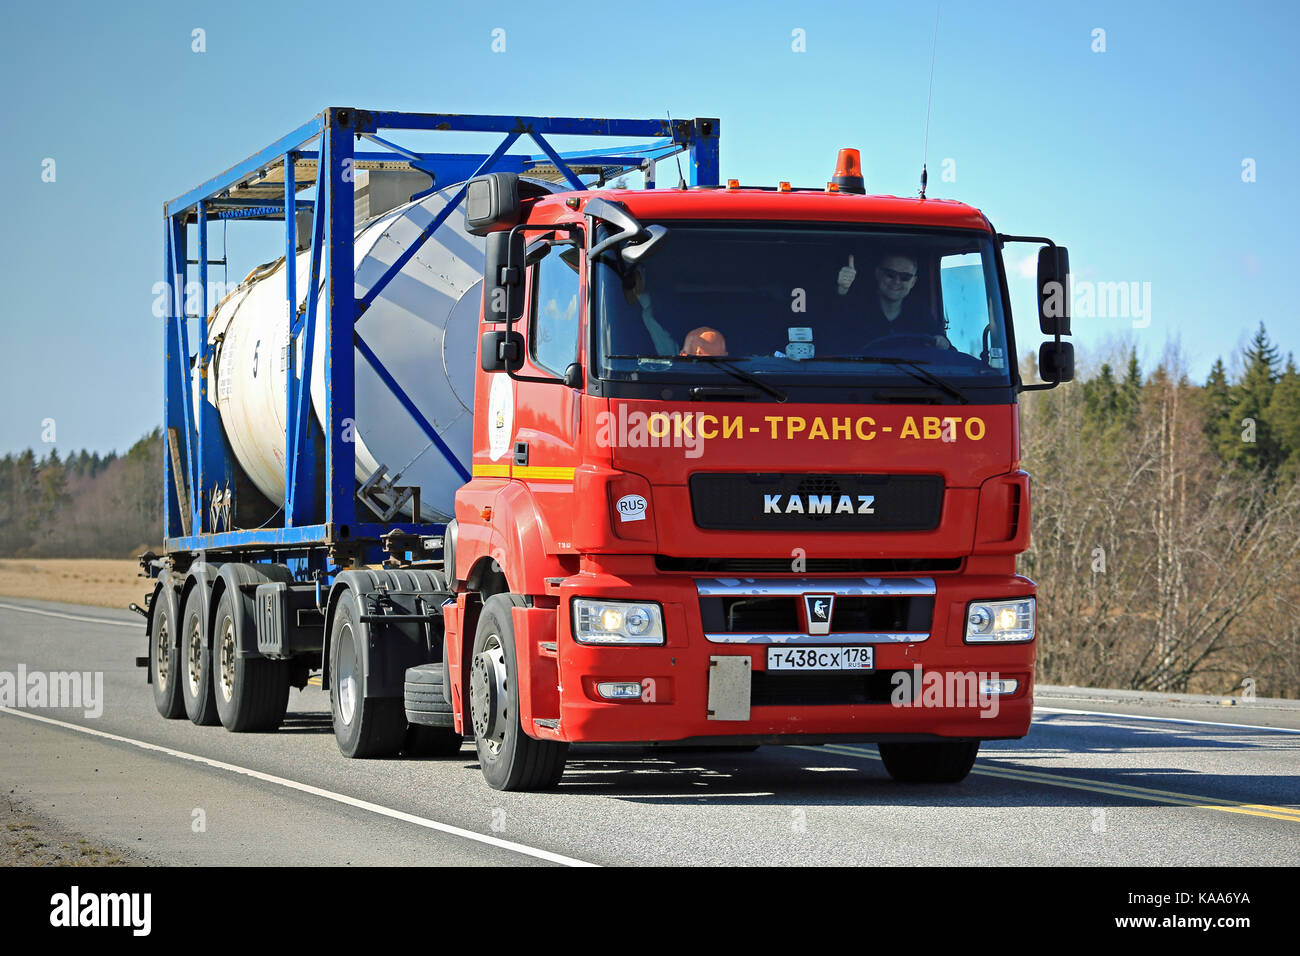 Mariehamn, Finnland - 1. Mai 2017: Rot russischen Kamaz t 1840 LKW-Transporte Tank Container entlang der Straße in Finnland, wo die kamaz selten zu sehen sind. Das tru Stockfoto